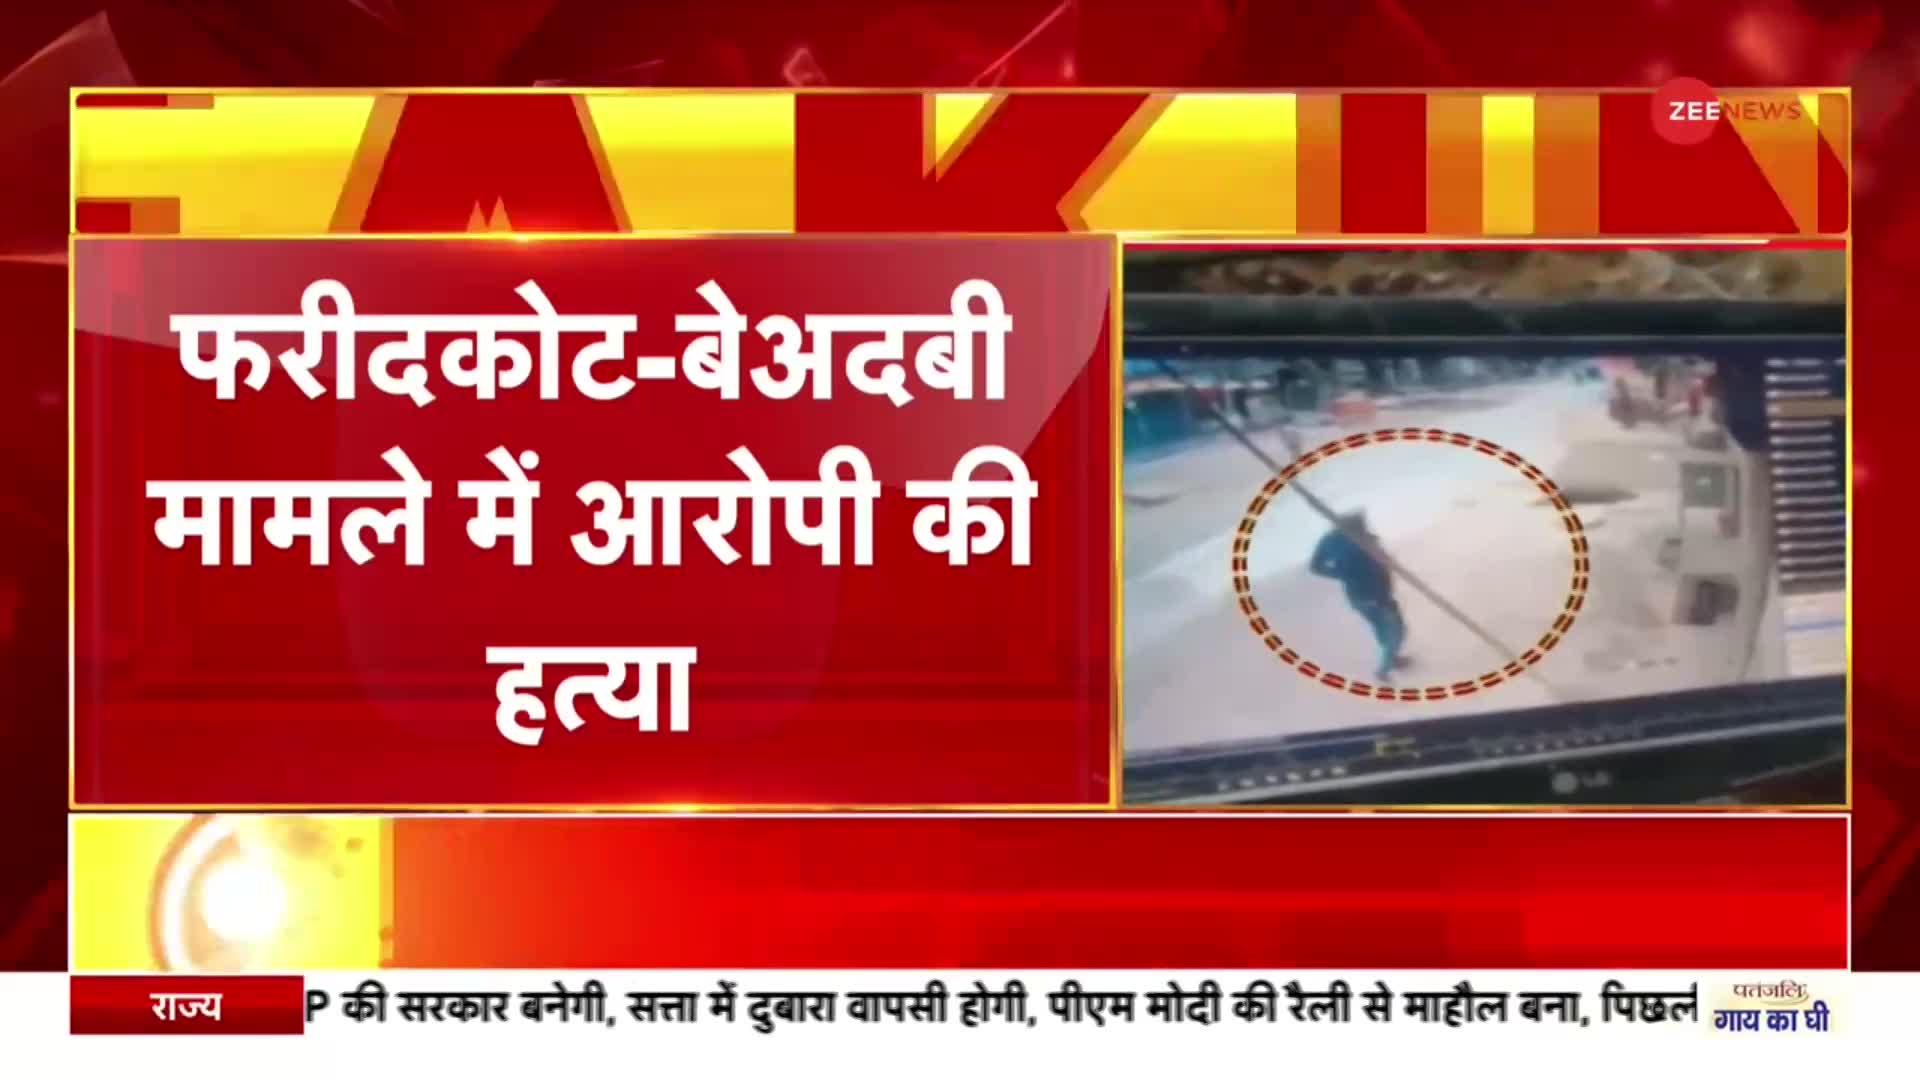 Breaking News: फरीदकोट में बेअदबी मामले में नामजद प्रदीप सिंह की हत्या